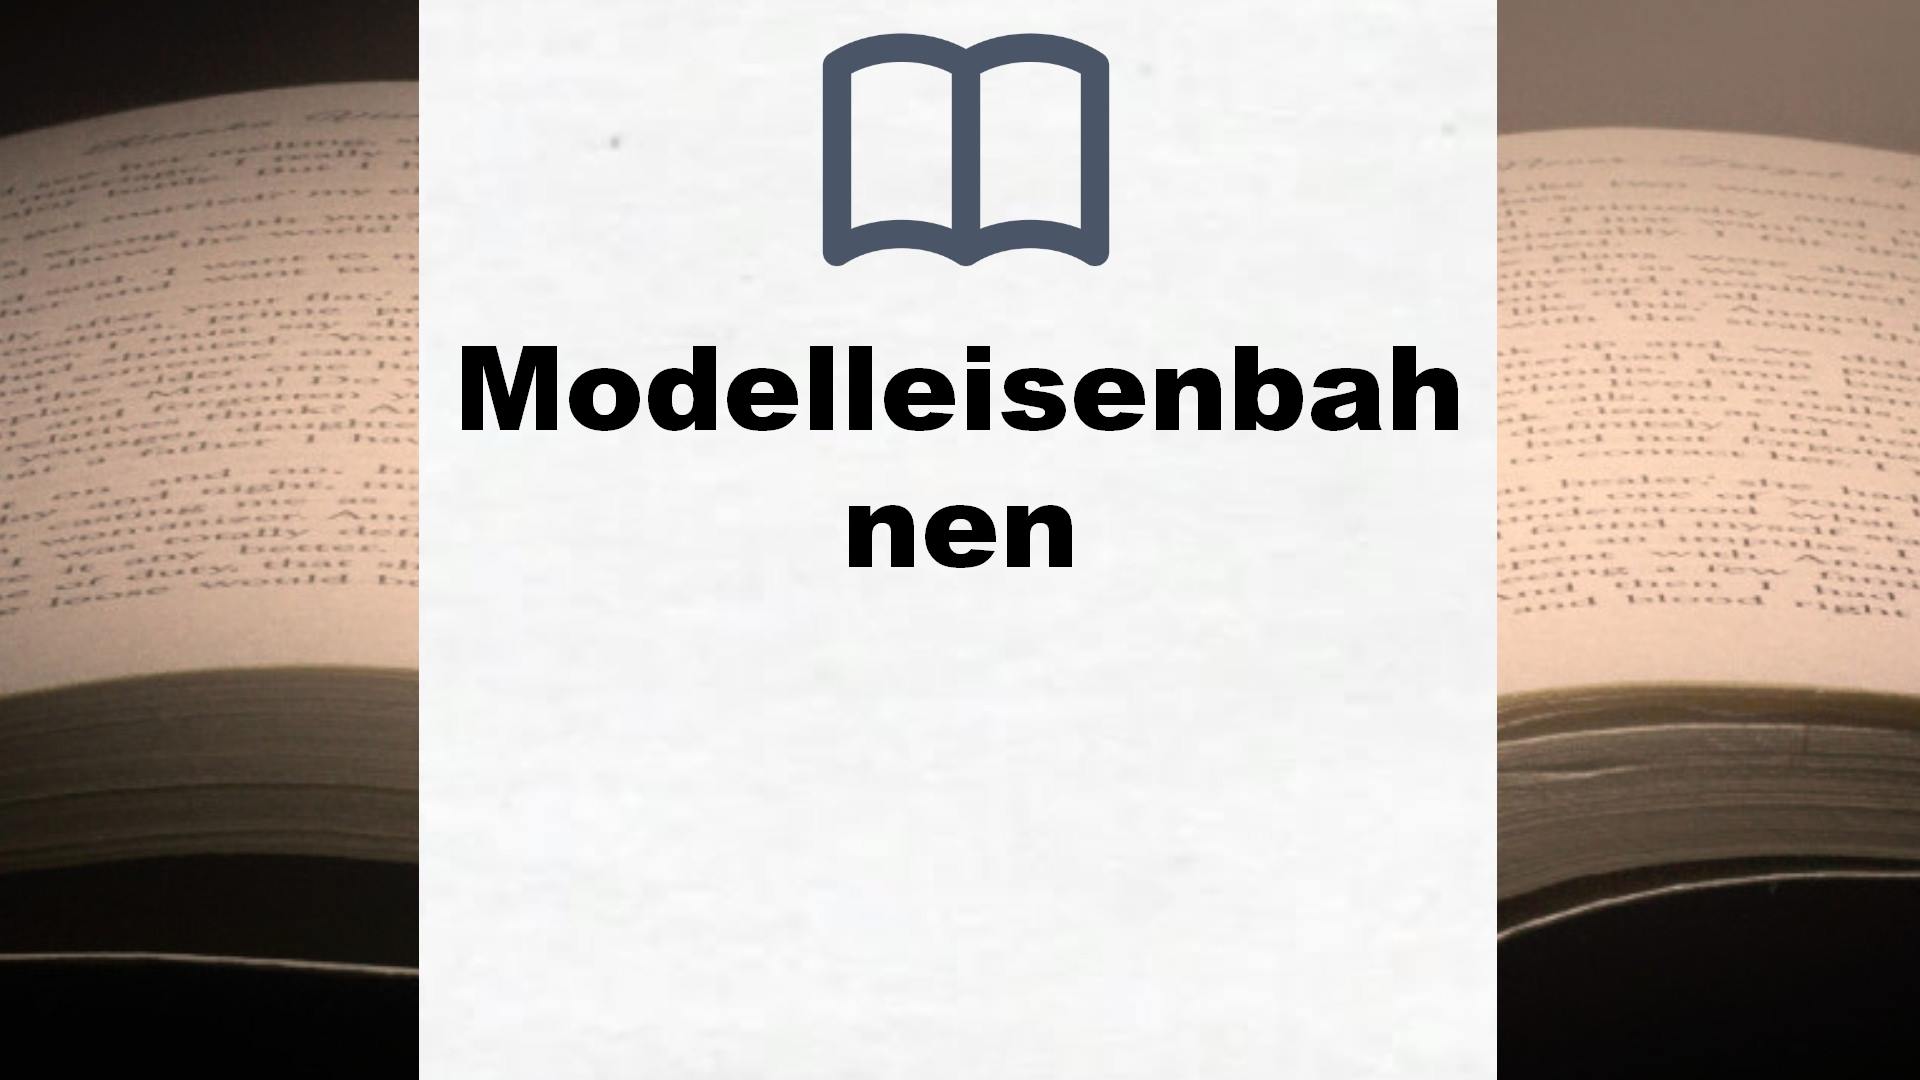 Bücher über Modelleisenbahnen